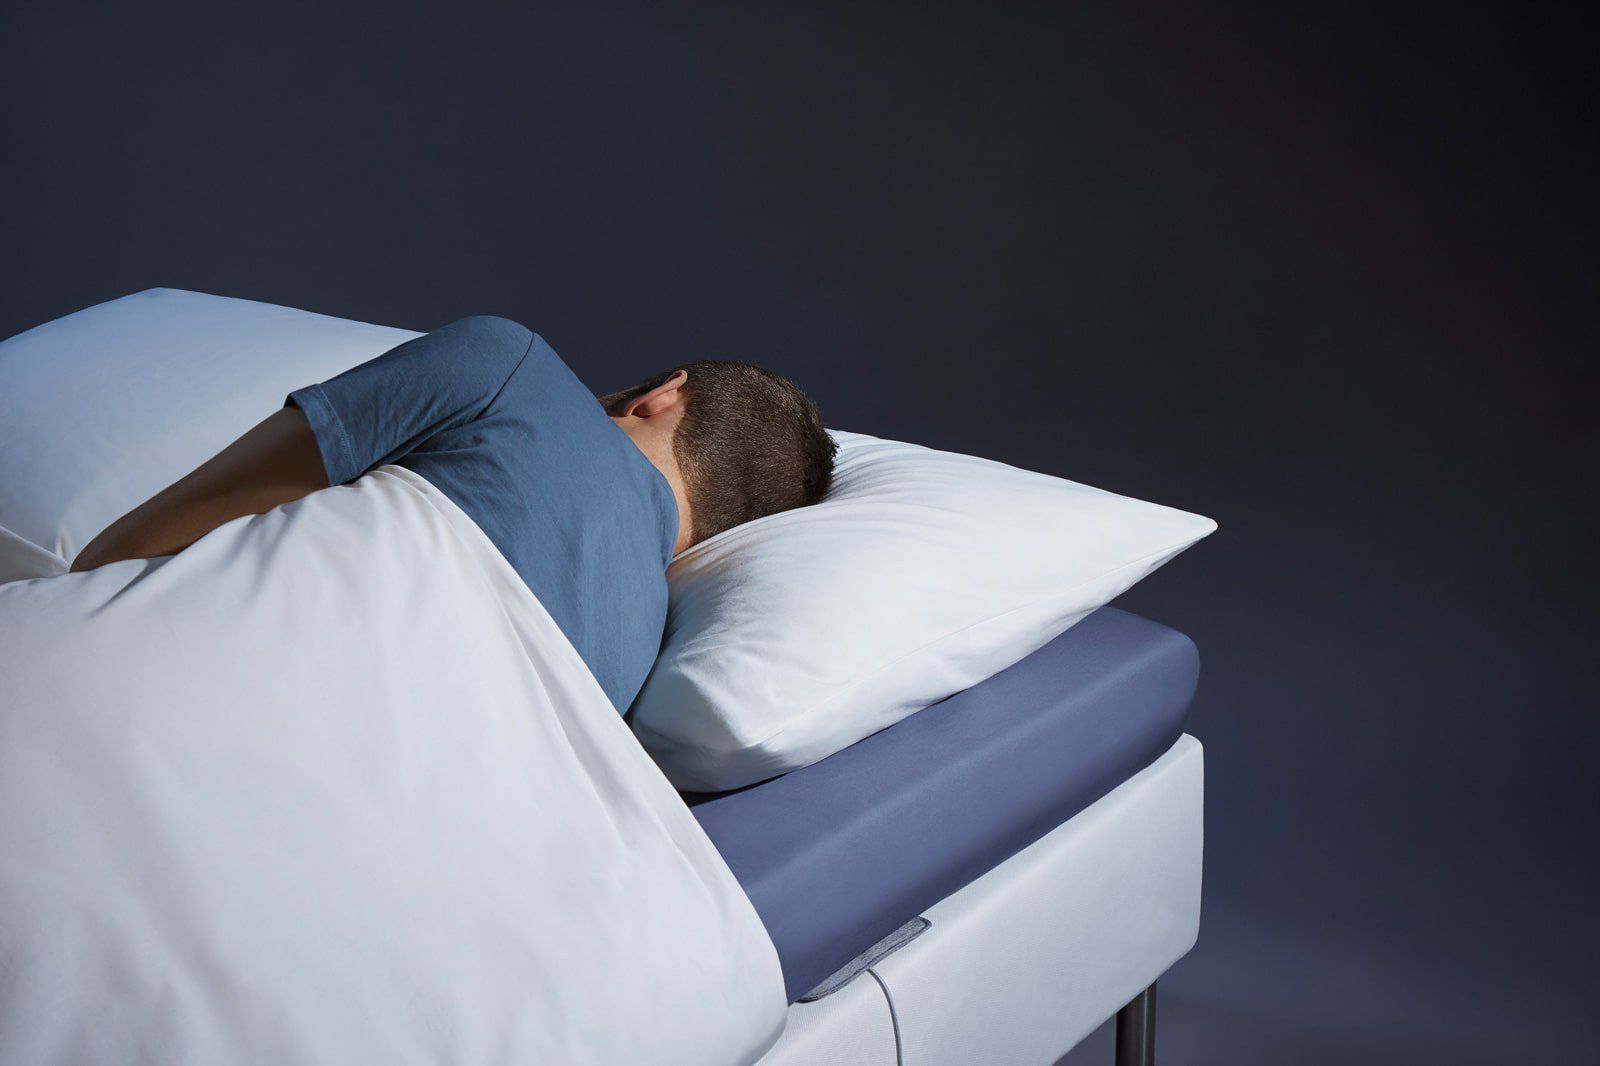 Man sleeping while keeping withings sleep tracker mat under mattress